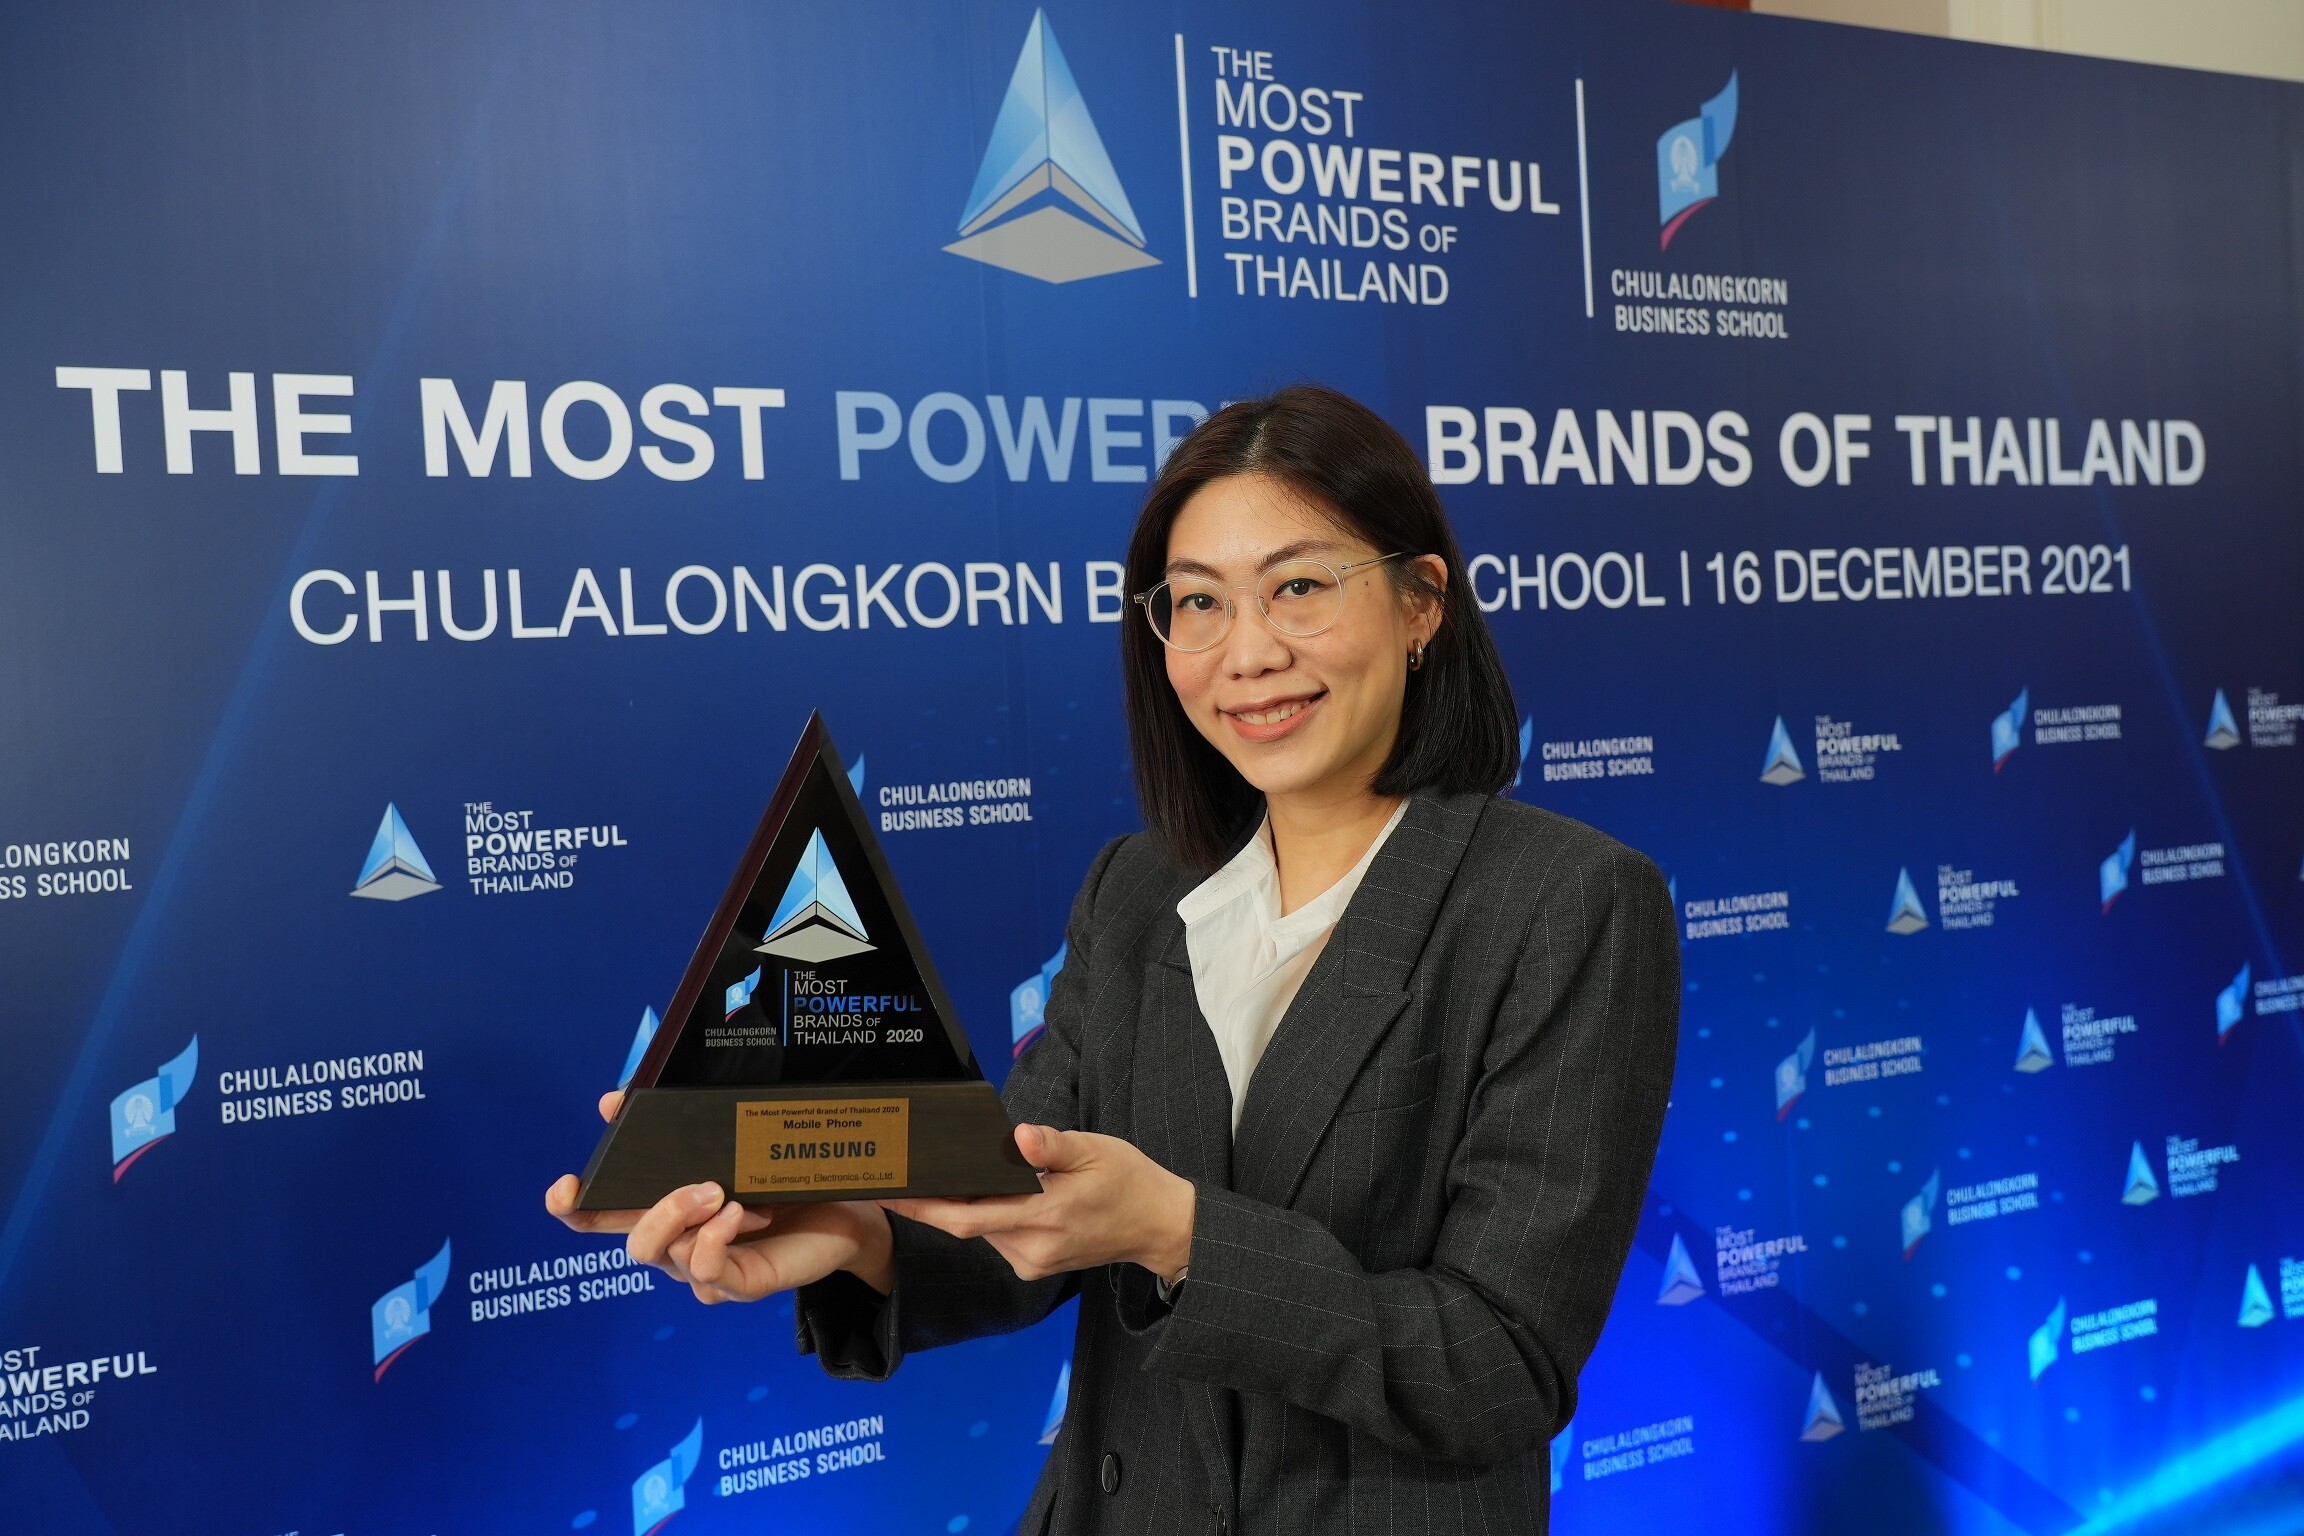 ซัมซุง คว้ารางวัลแบรนด์ที่ทรงพลังที่สุดในประเทศไทย ต่อเนื่องเป็นปีที่ 5 จากภาควิชาการตลาด คณะพาณิชยศาสตร์และการบัญชี จุฬาฯ